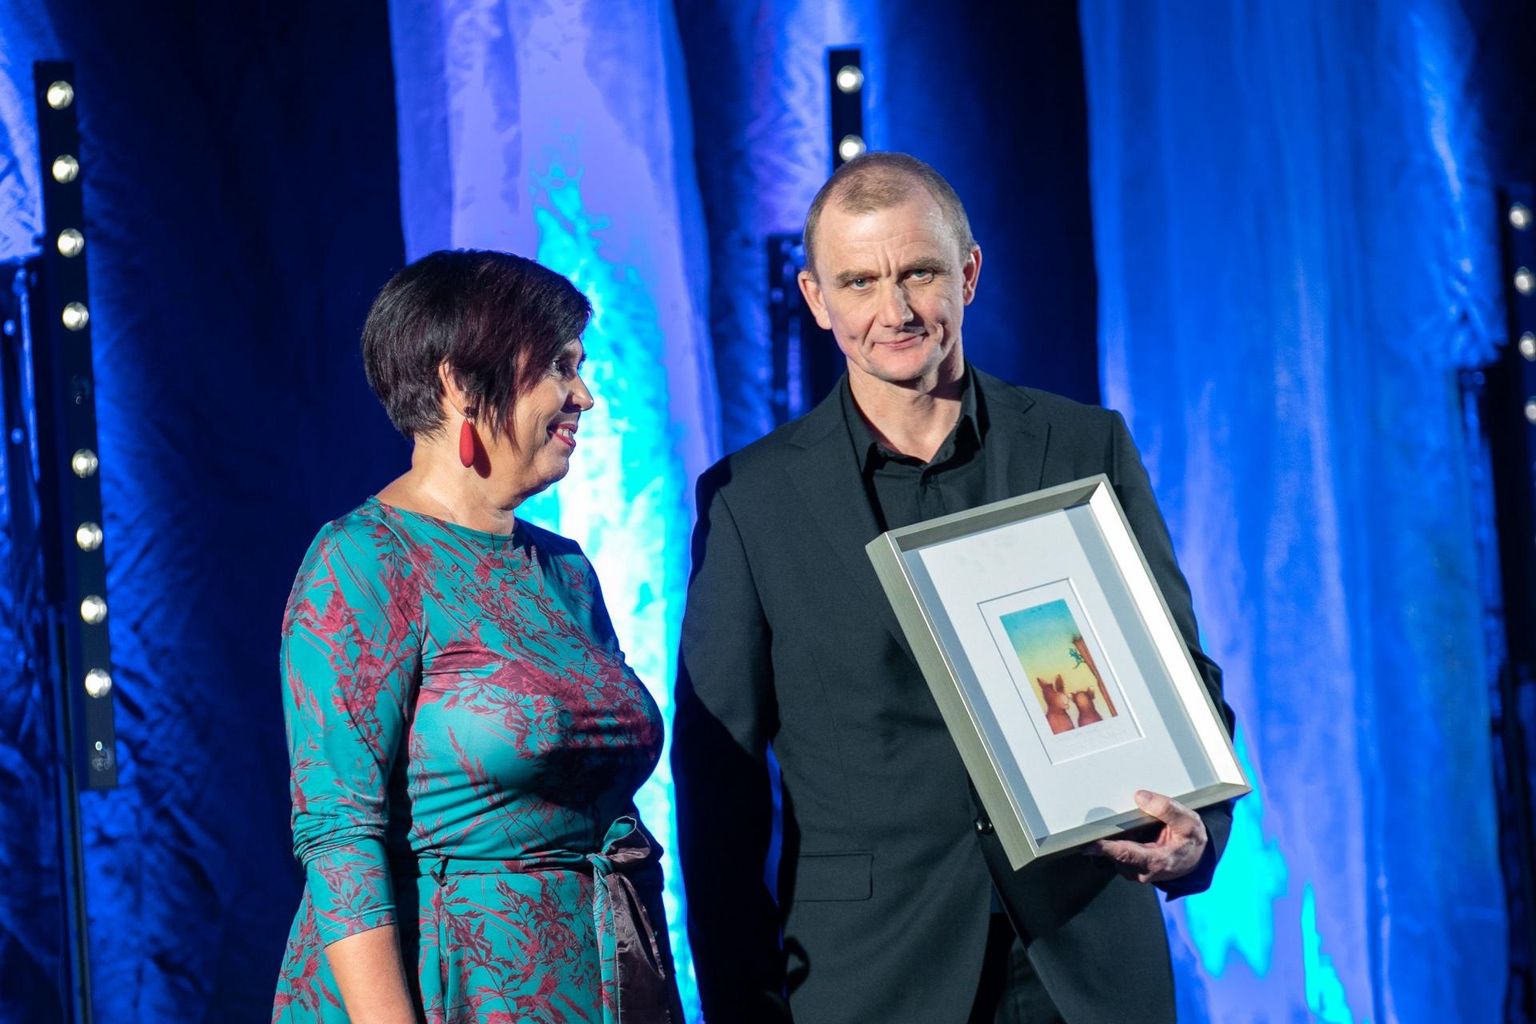 Möödunud aastal võttis Aru Grupi asutaja ja juhataja Juhan Viise vastu nii aasta ettevõtte tiitli kui ka Luminori eriauhinna, mille andis üle Janne Nukk.